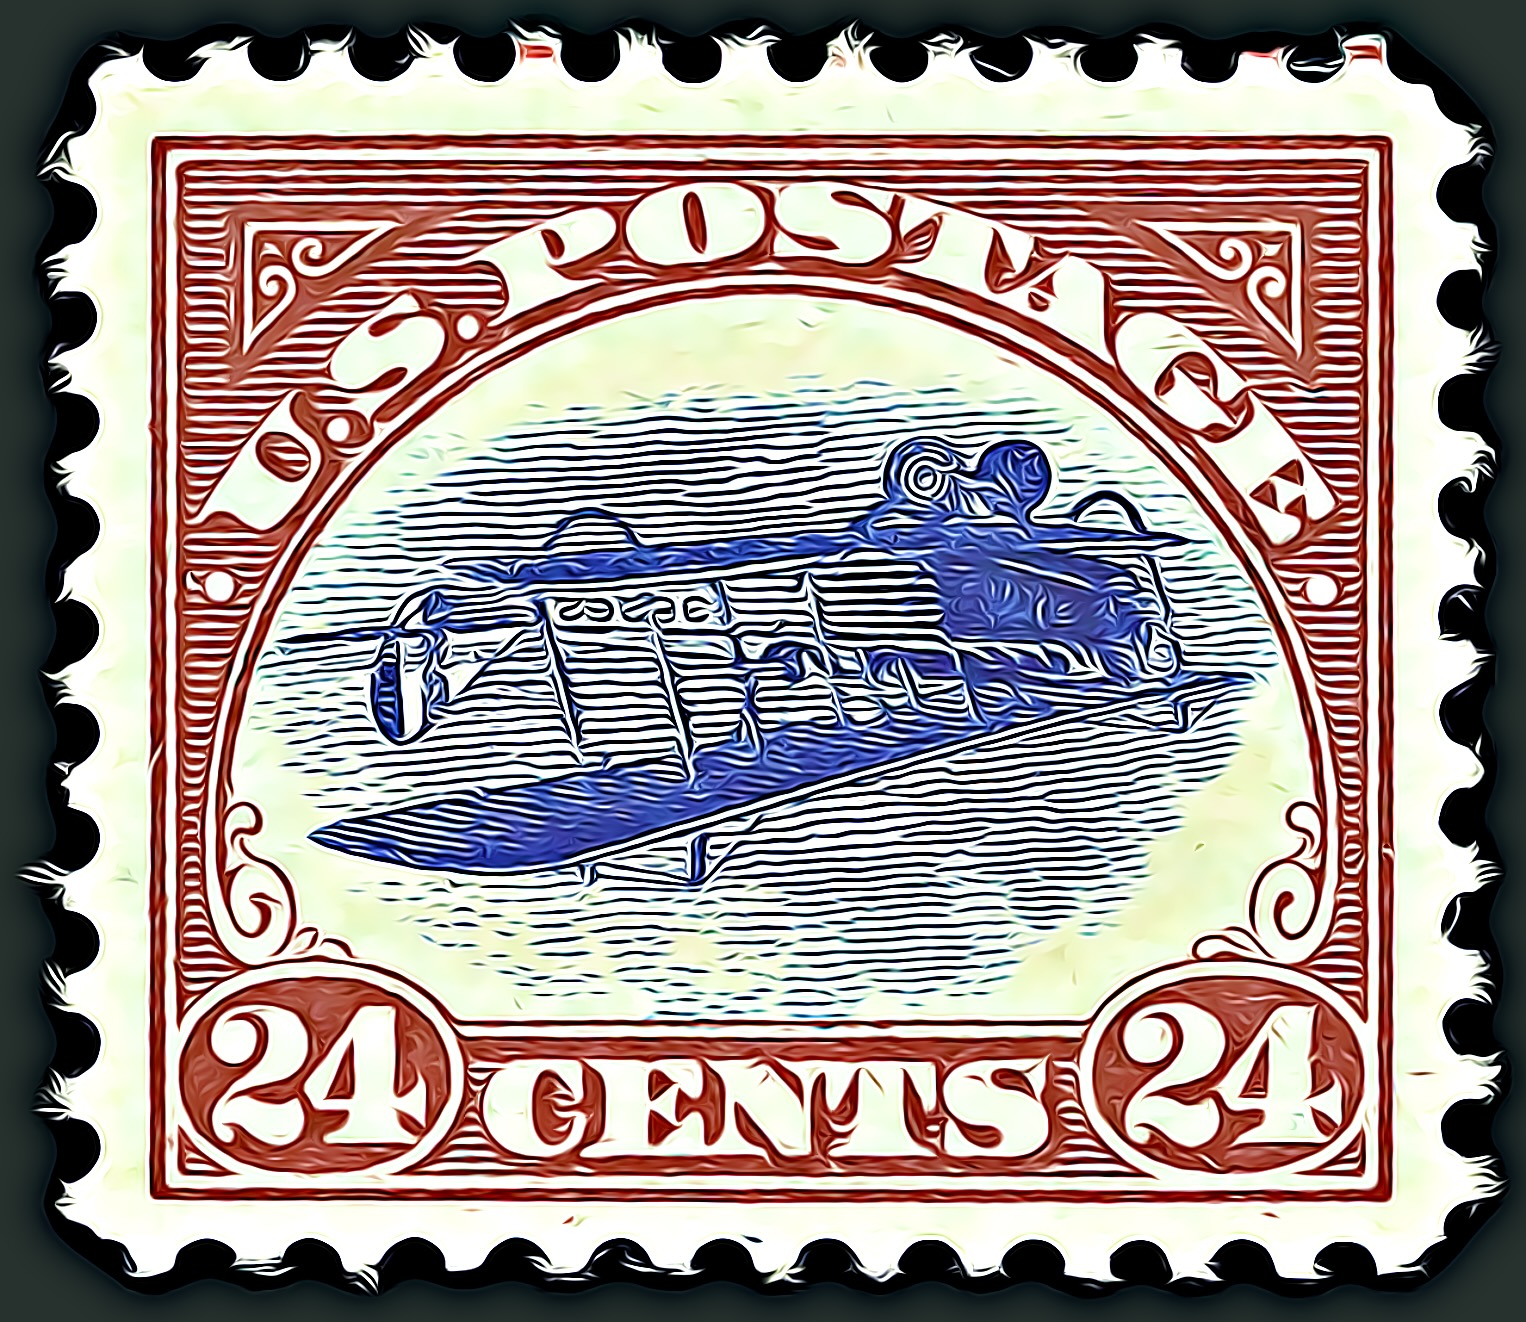 The Inverted Jenny - U.S. Stamp